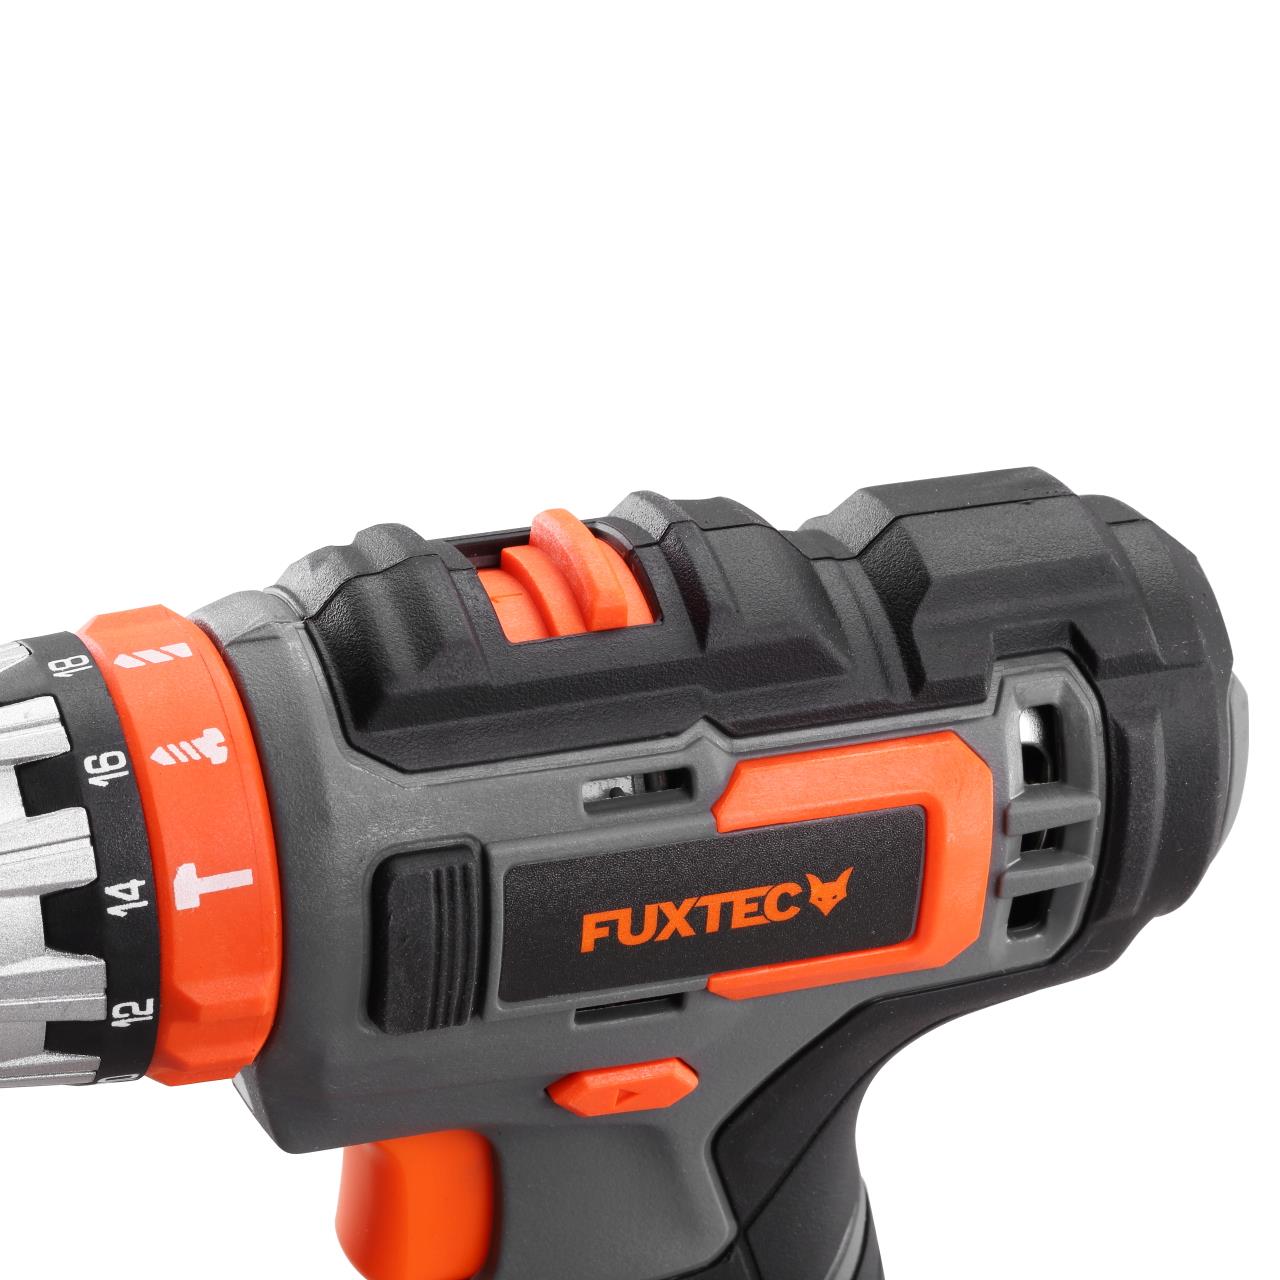 20V cordless impact drill/driver - kit FUXTEC E1SBS20